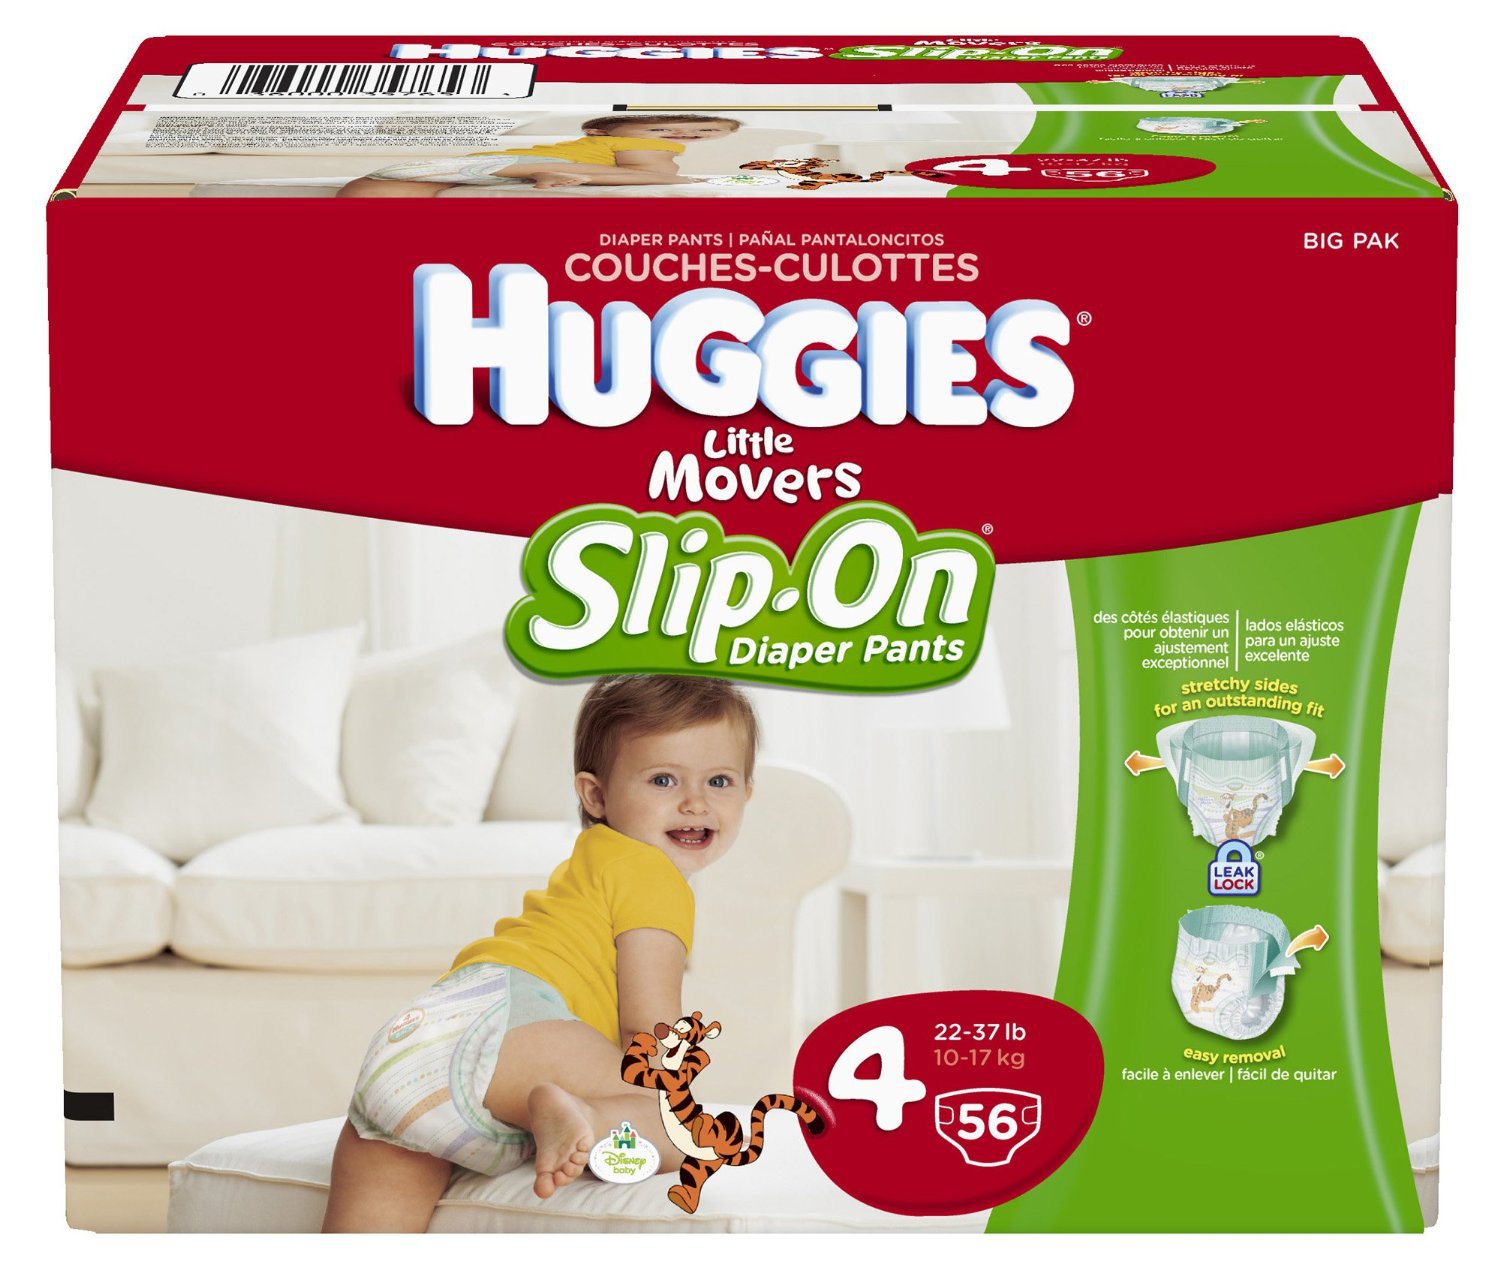 Huggies Slip On Diapers Tv